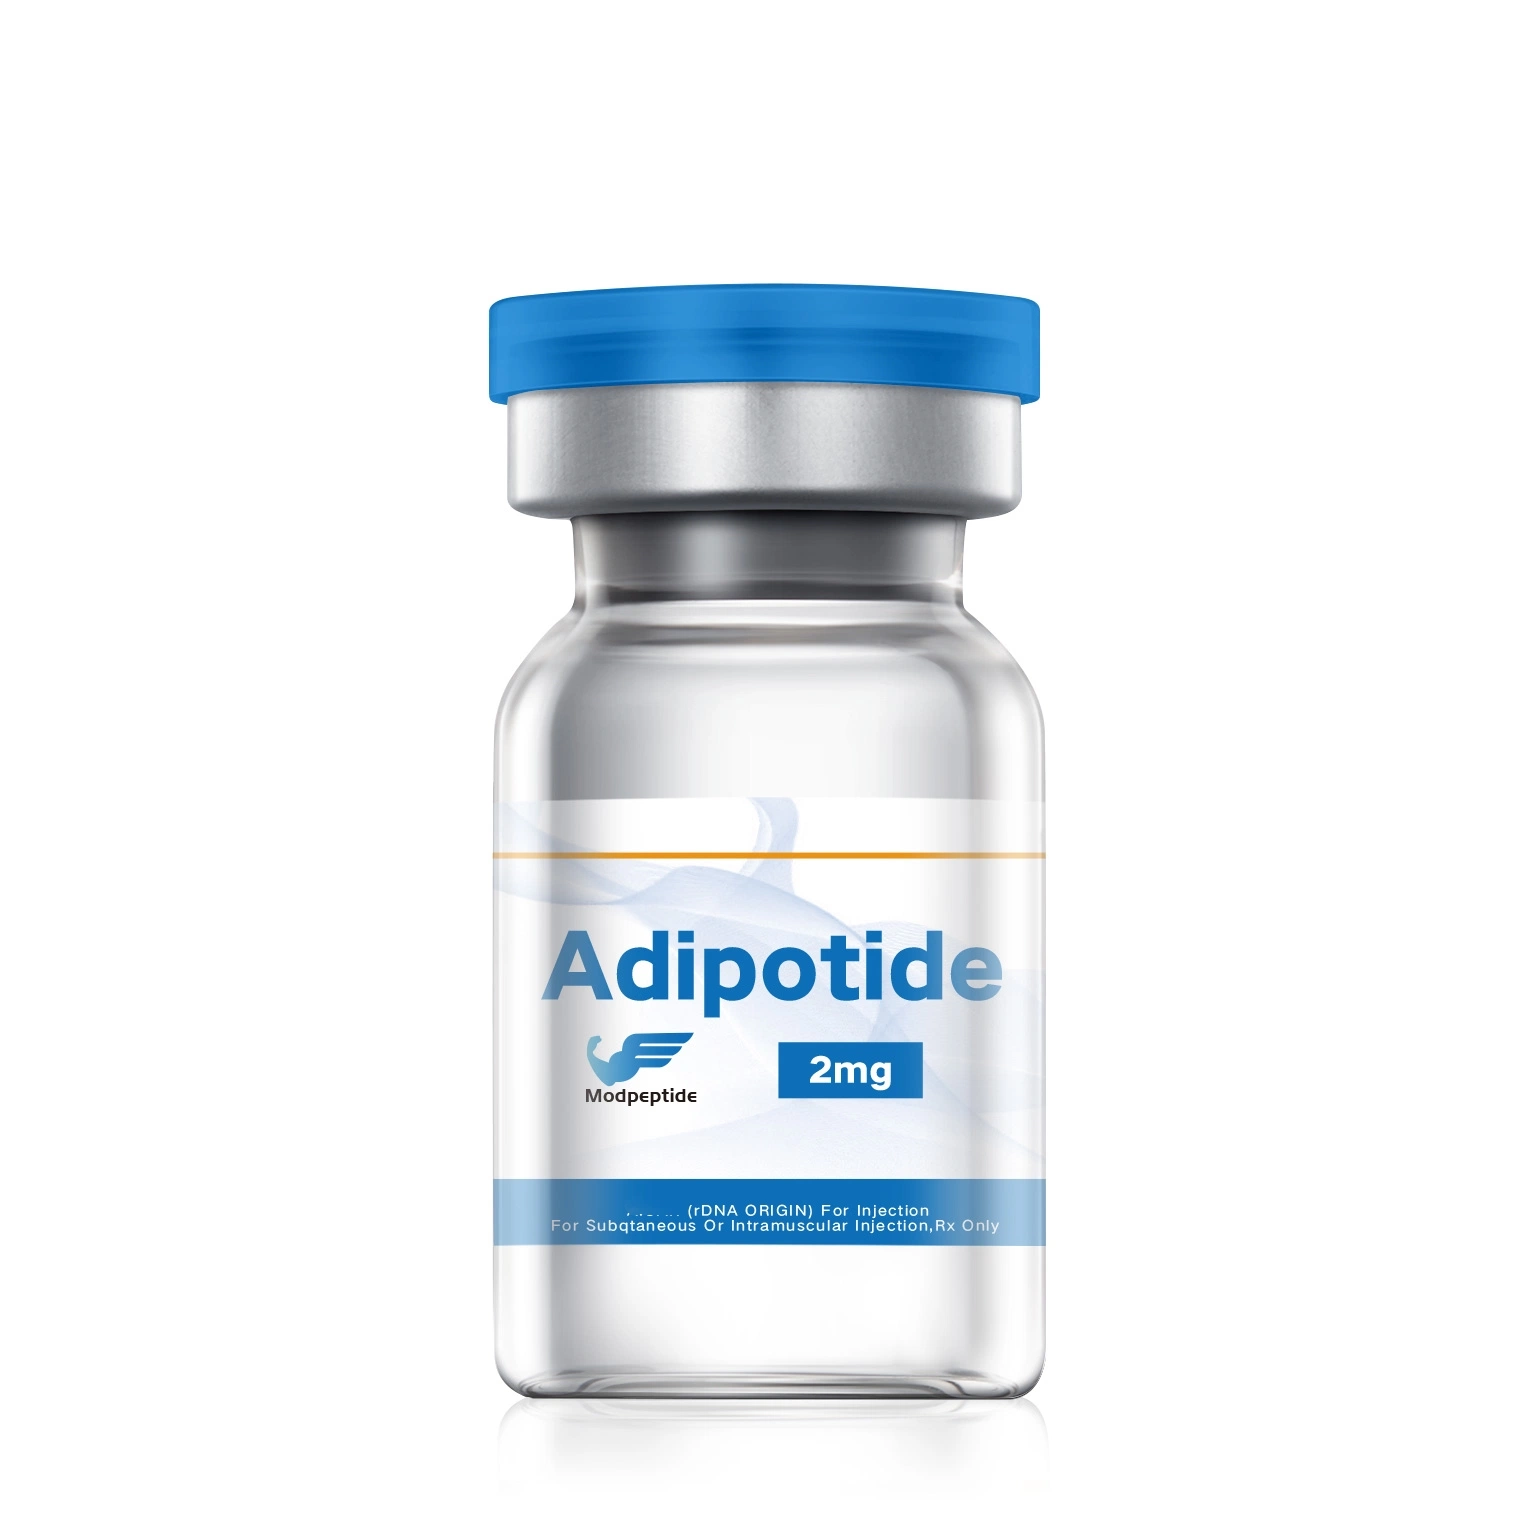 Péptidos de pérdida de peso Adipotide polvo péptidos FTPP 2mg Semaglutide injectable